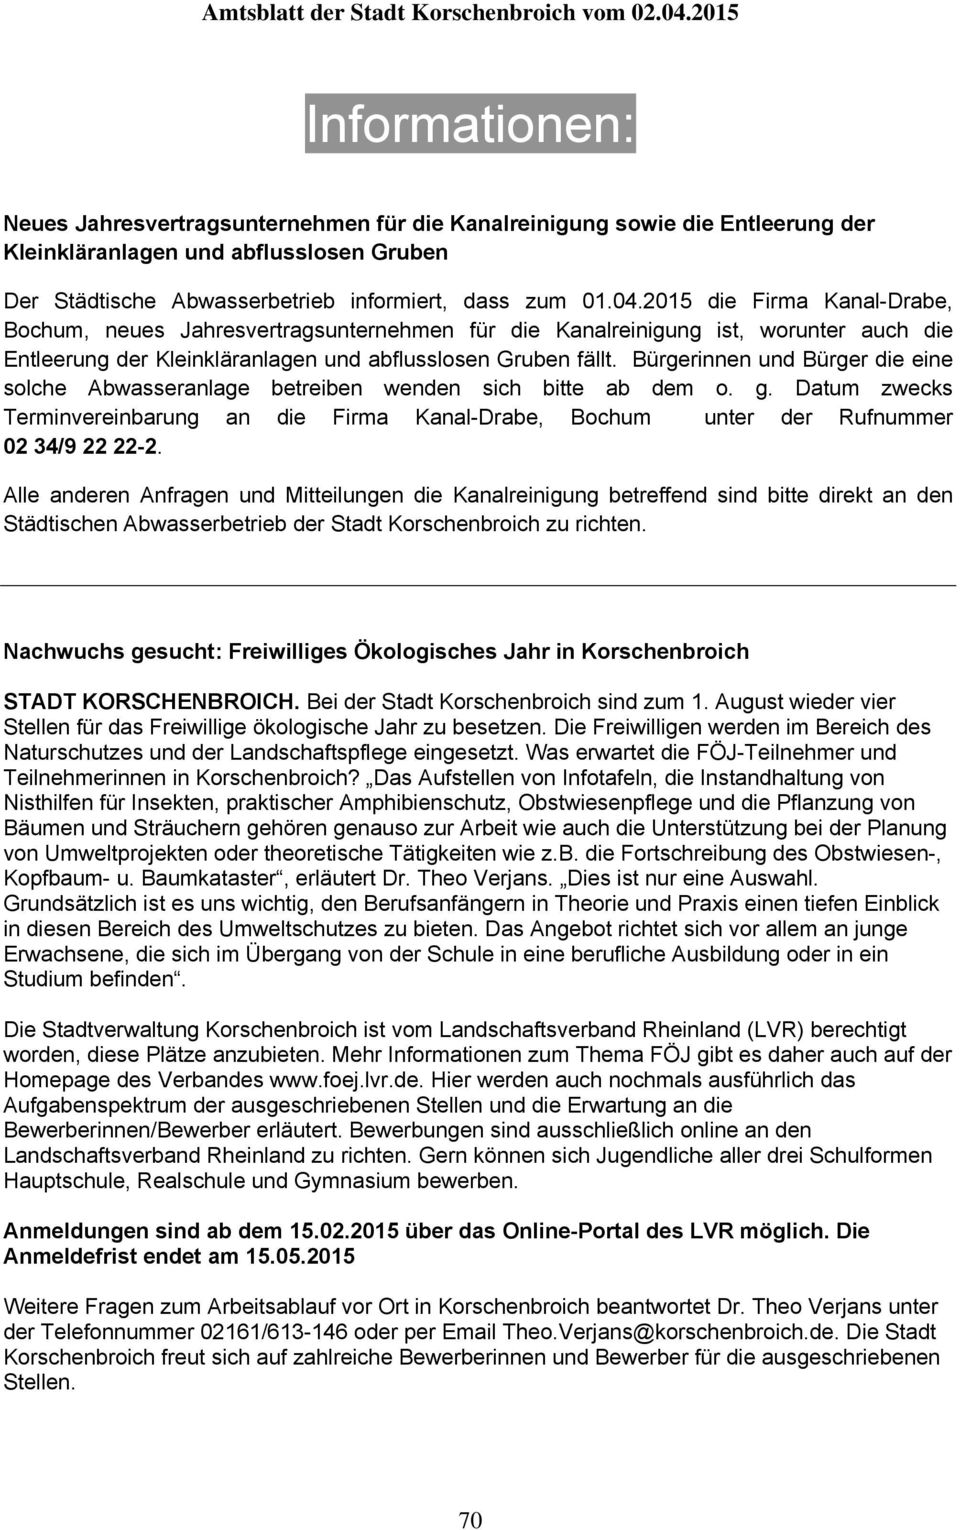 Bürgerinnen und Bürger die eine solche Abwasseranlage betreiben wenden sich bitte ab dem o. g. Datum zwecks Terminvereinbarung an die Firma Kanal-Drabe, Bochum unter der Rufnummer 02 34/9 22 22-2.